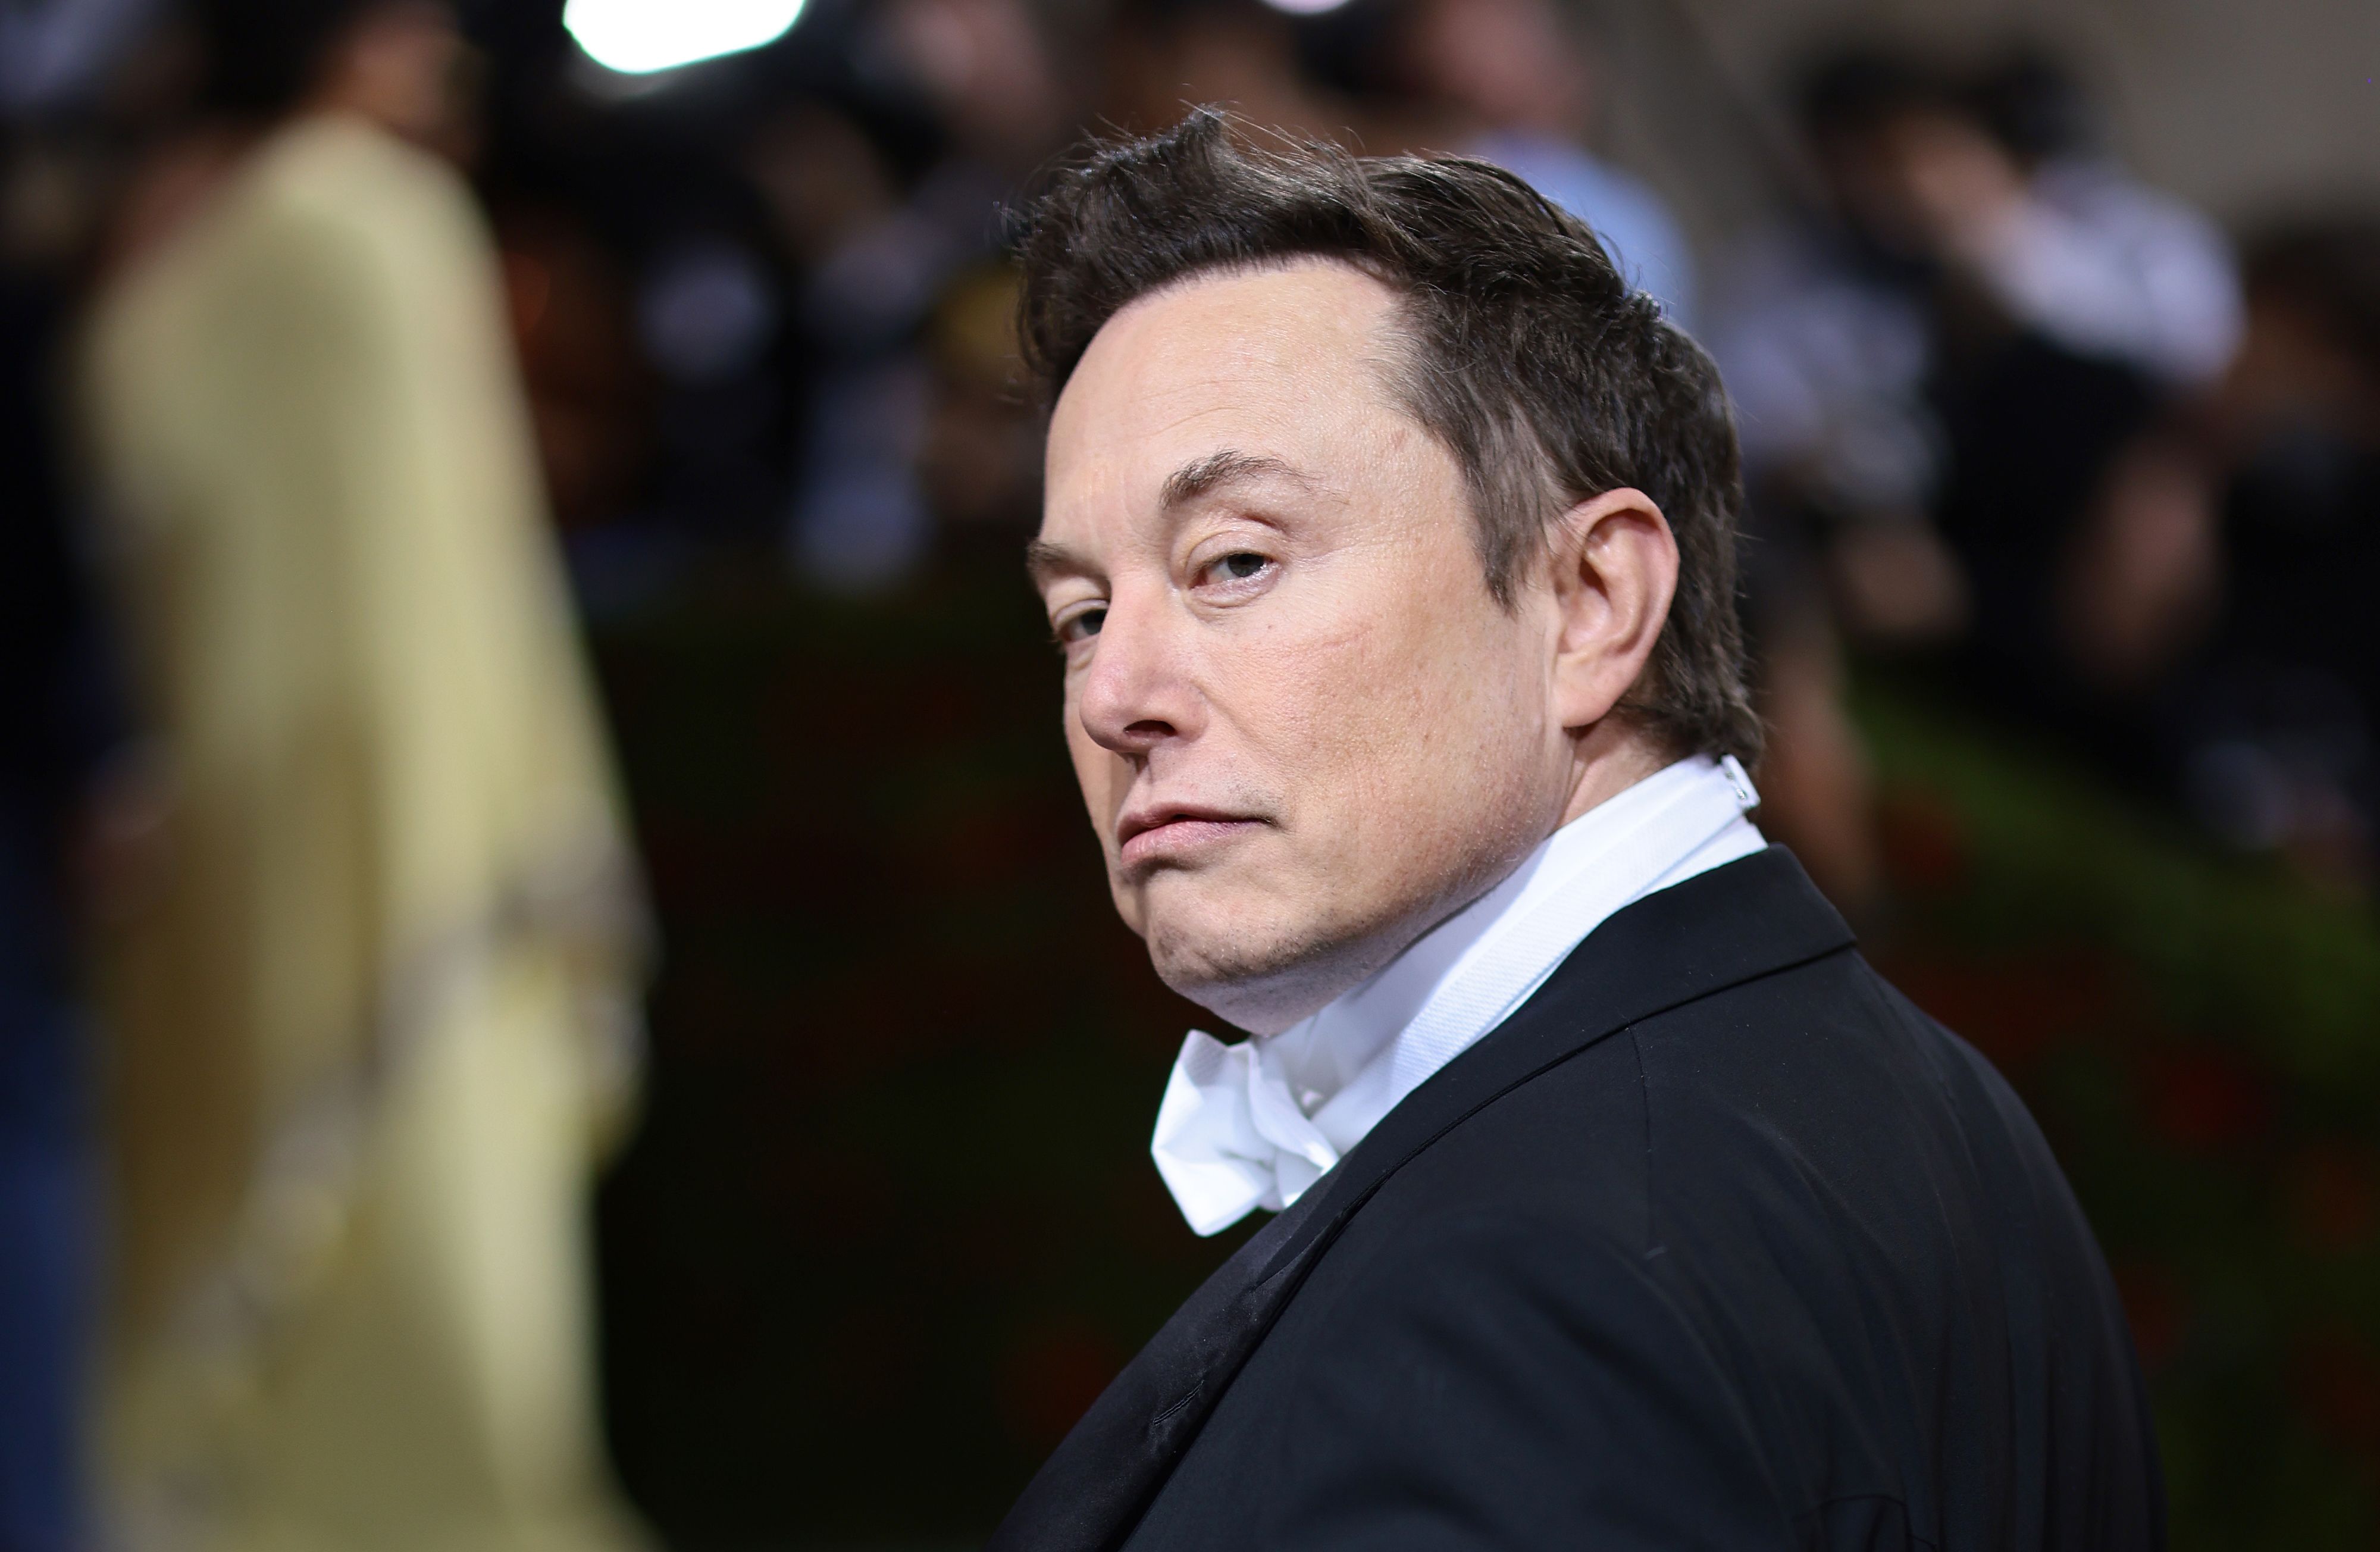 Elon Musk mất ngôi đầu trong danh sách người giàu nhất thế giới của Forbes